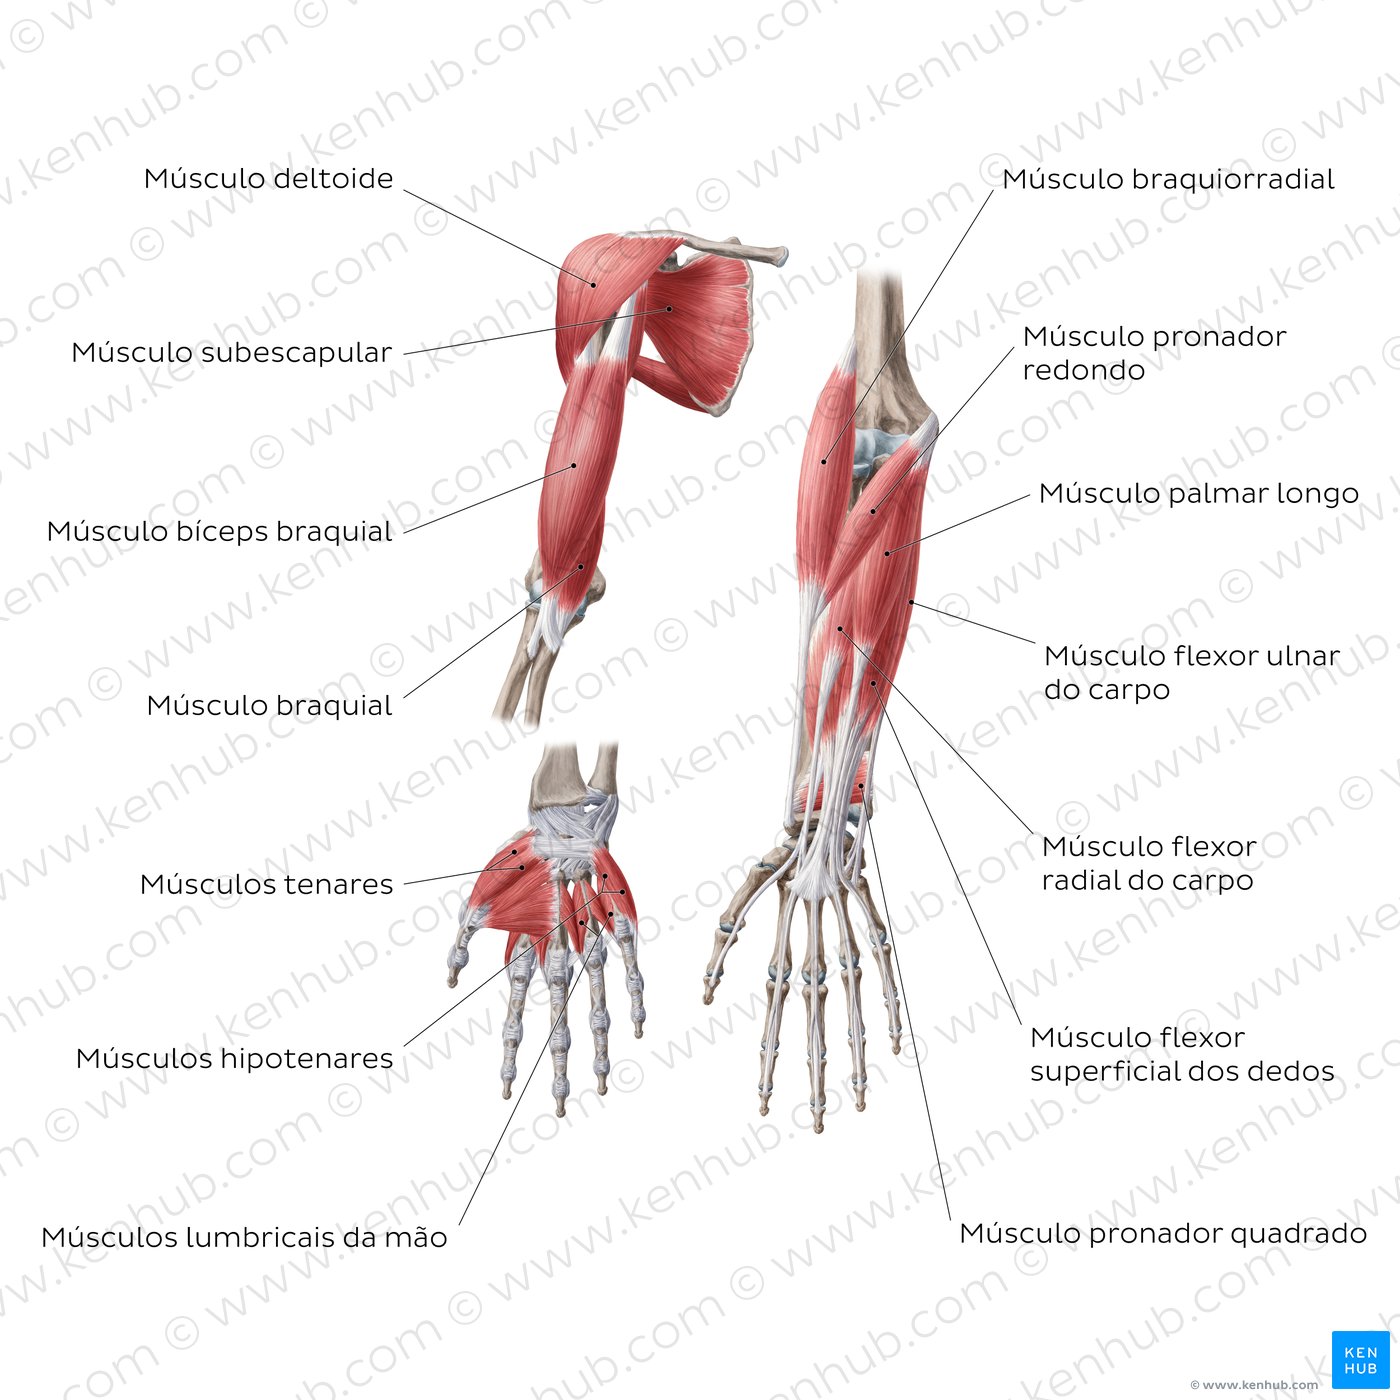 Músculos do braço (vista anterior)